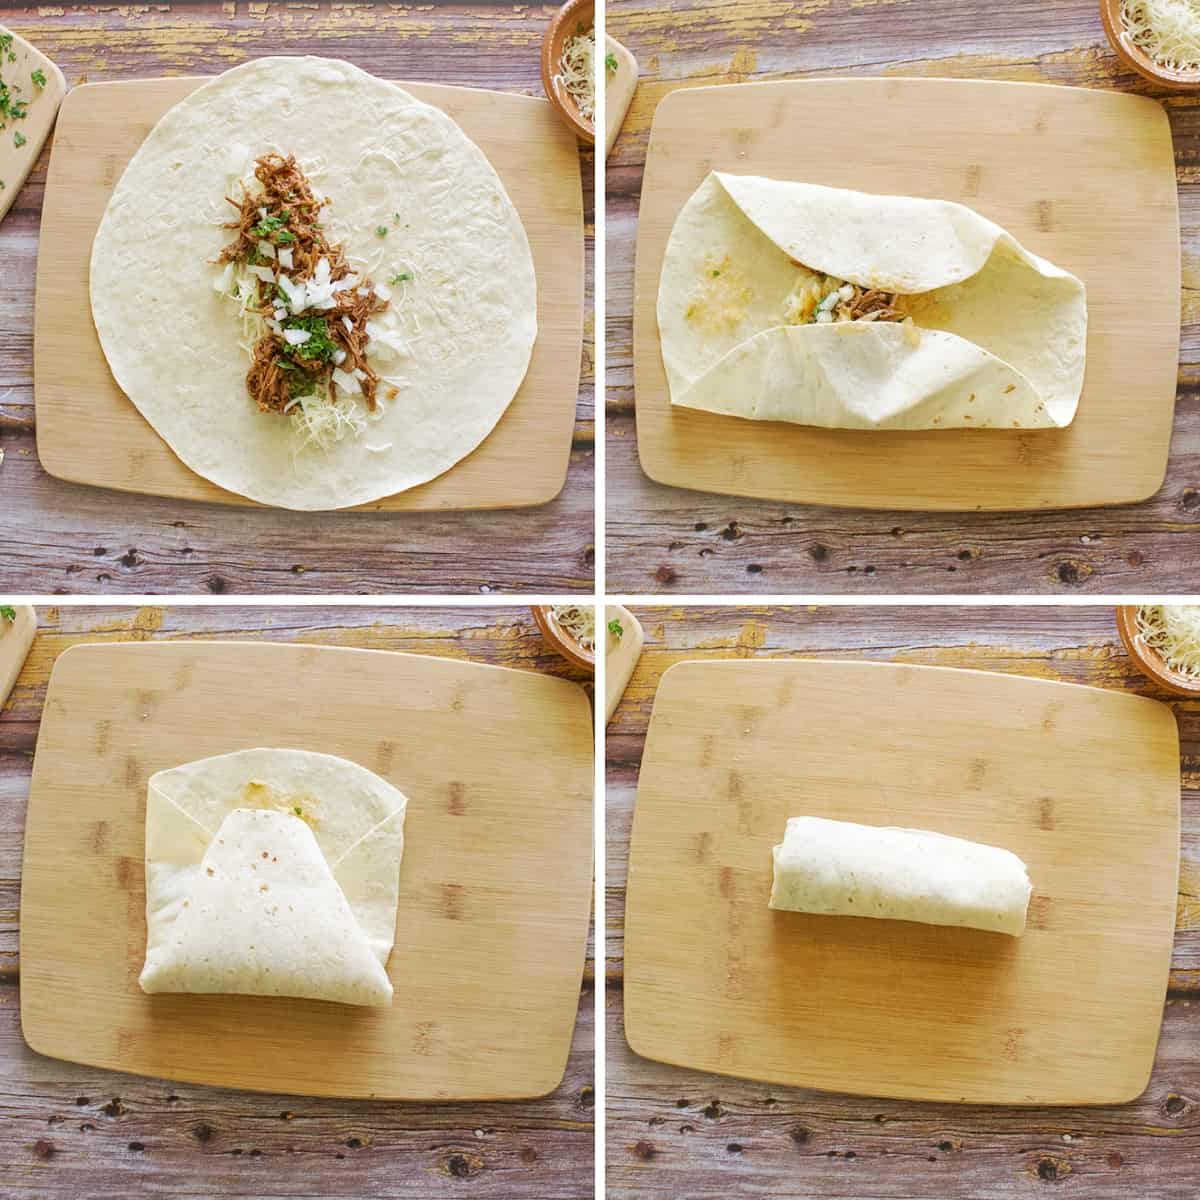 Assembling a birria burrito.